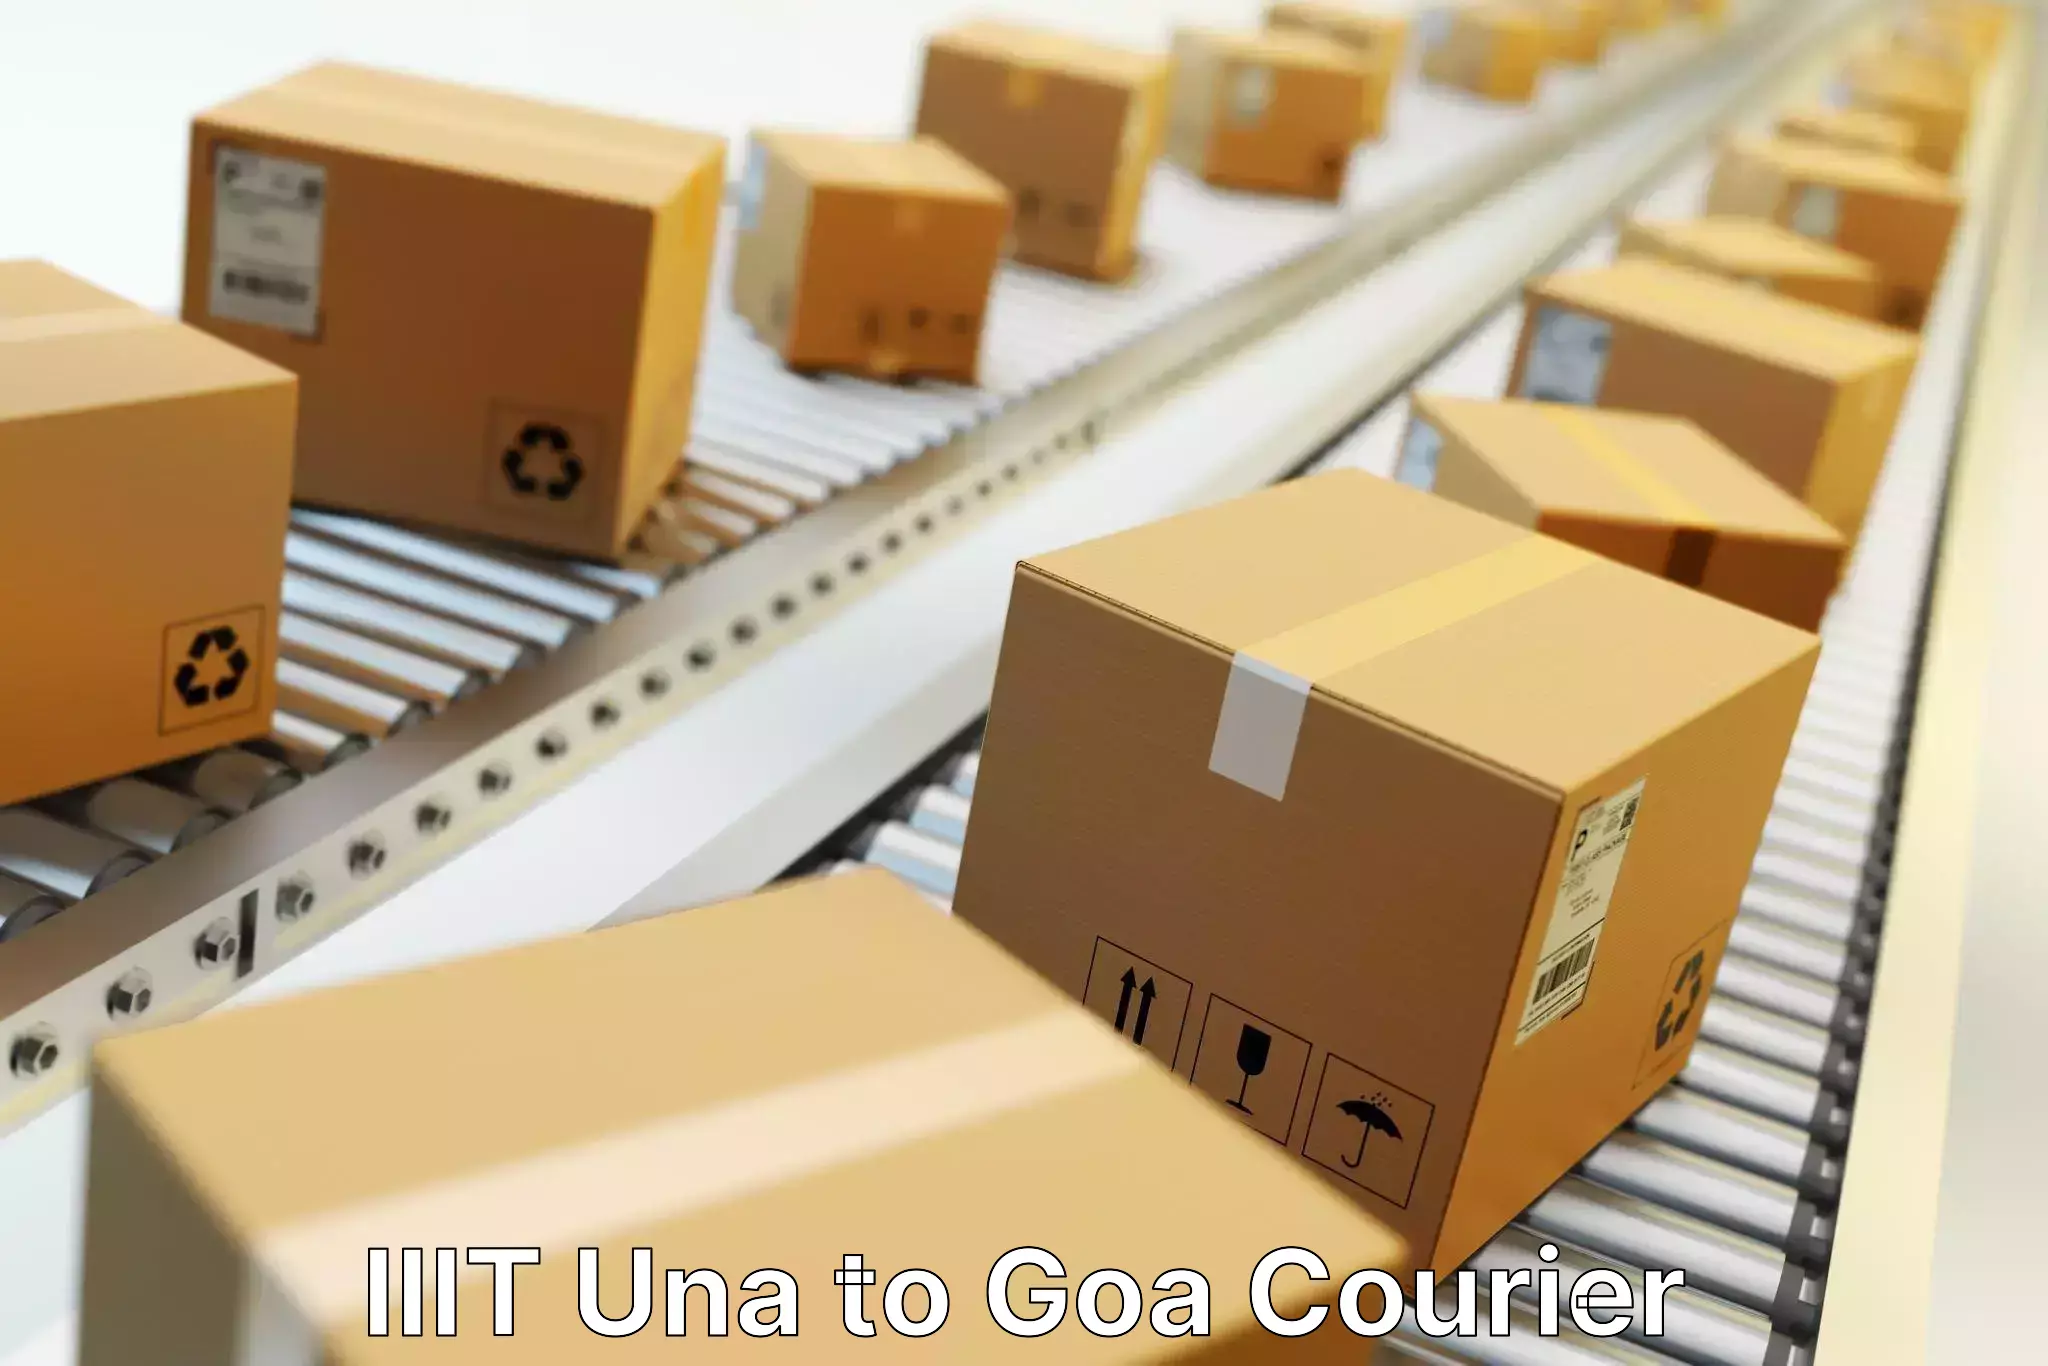 Comprehensive freight services IIIT Una to IIT Goa